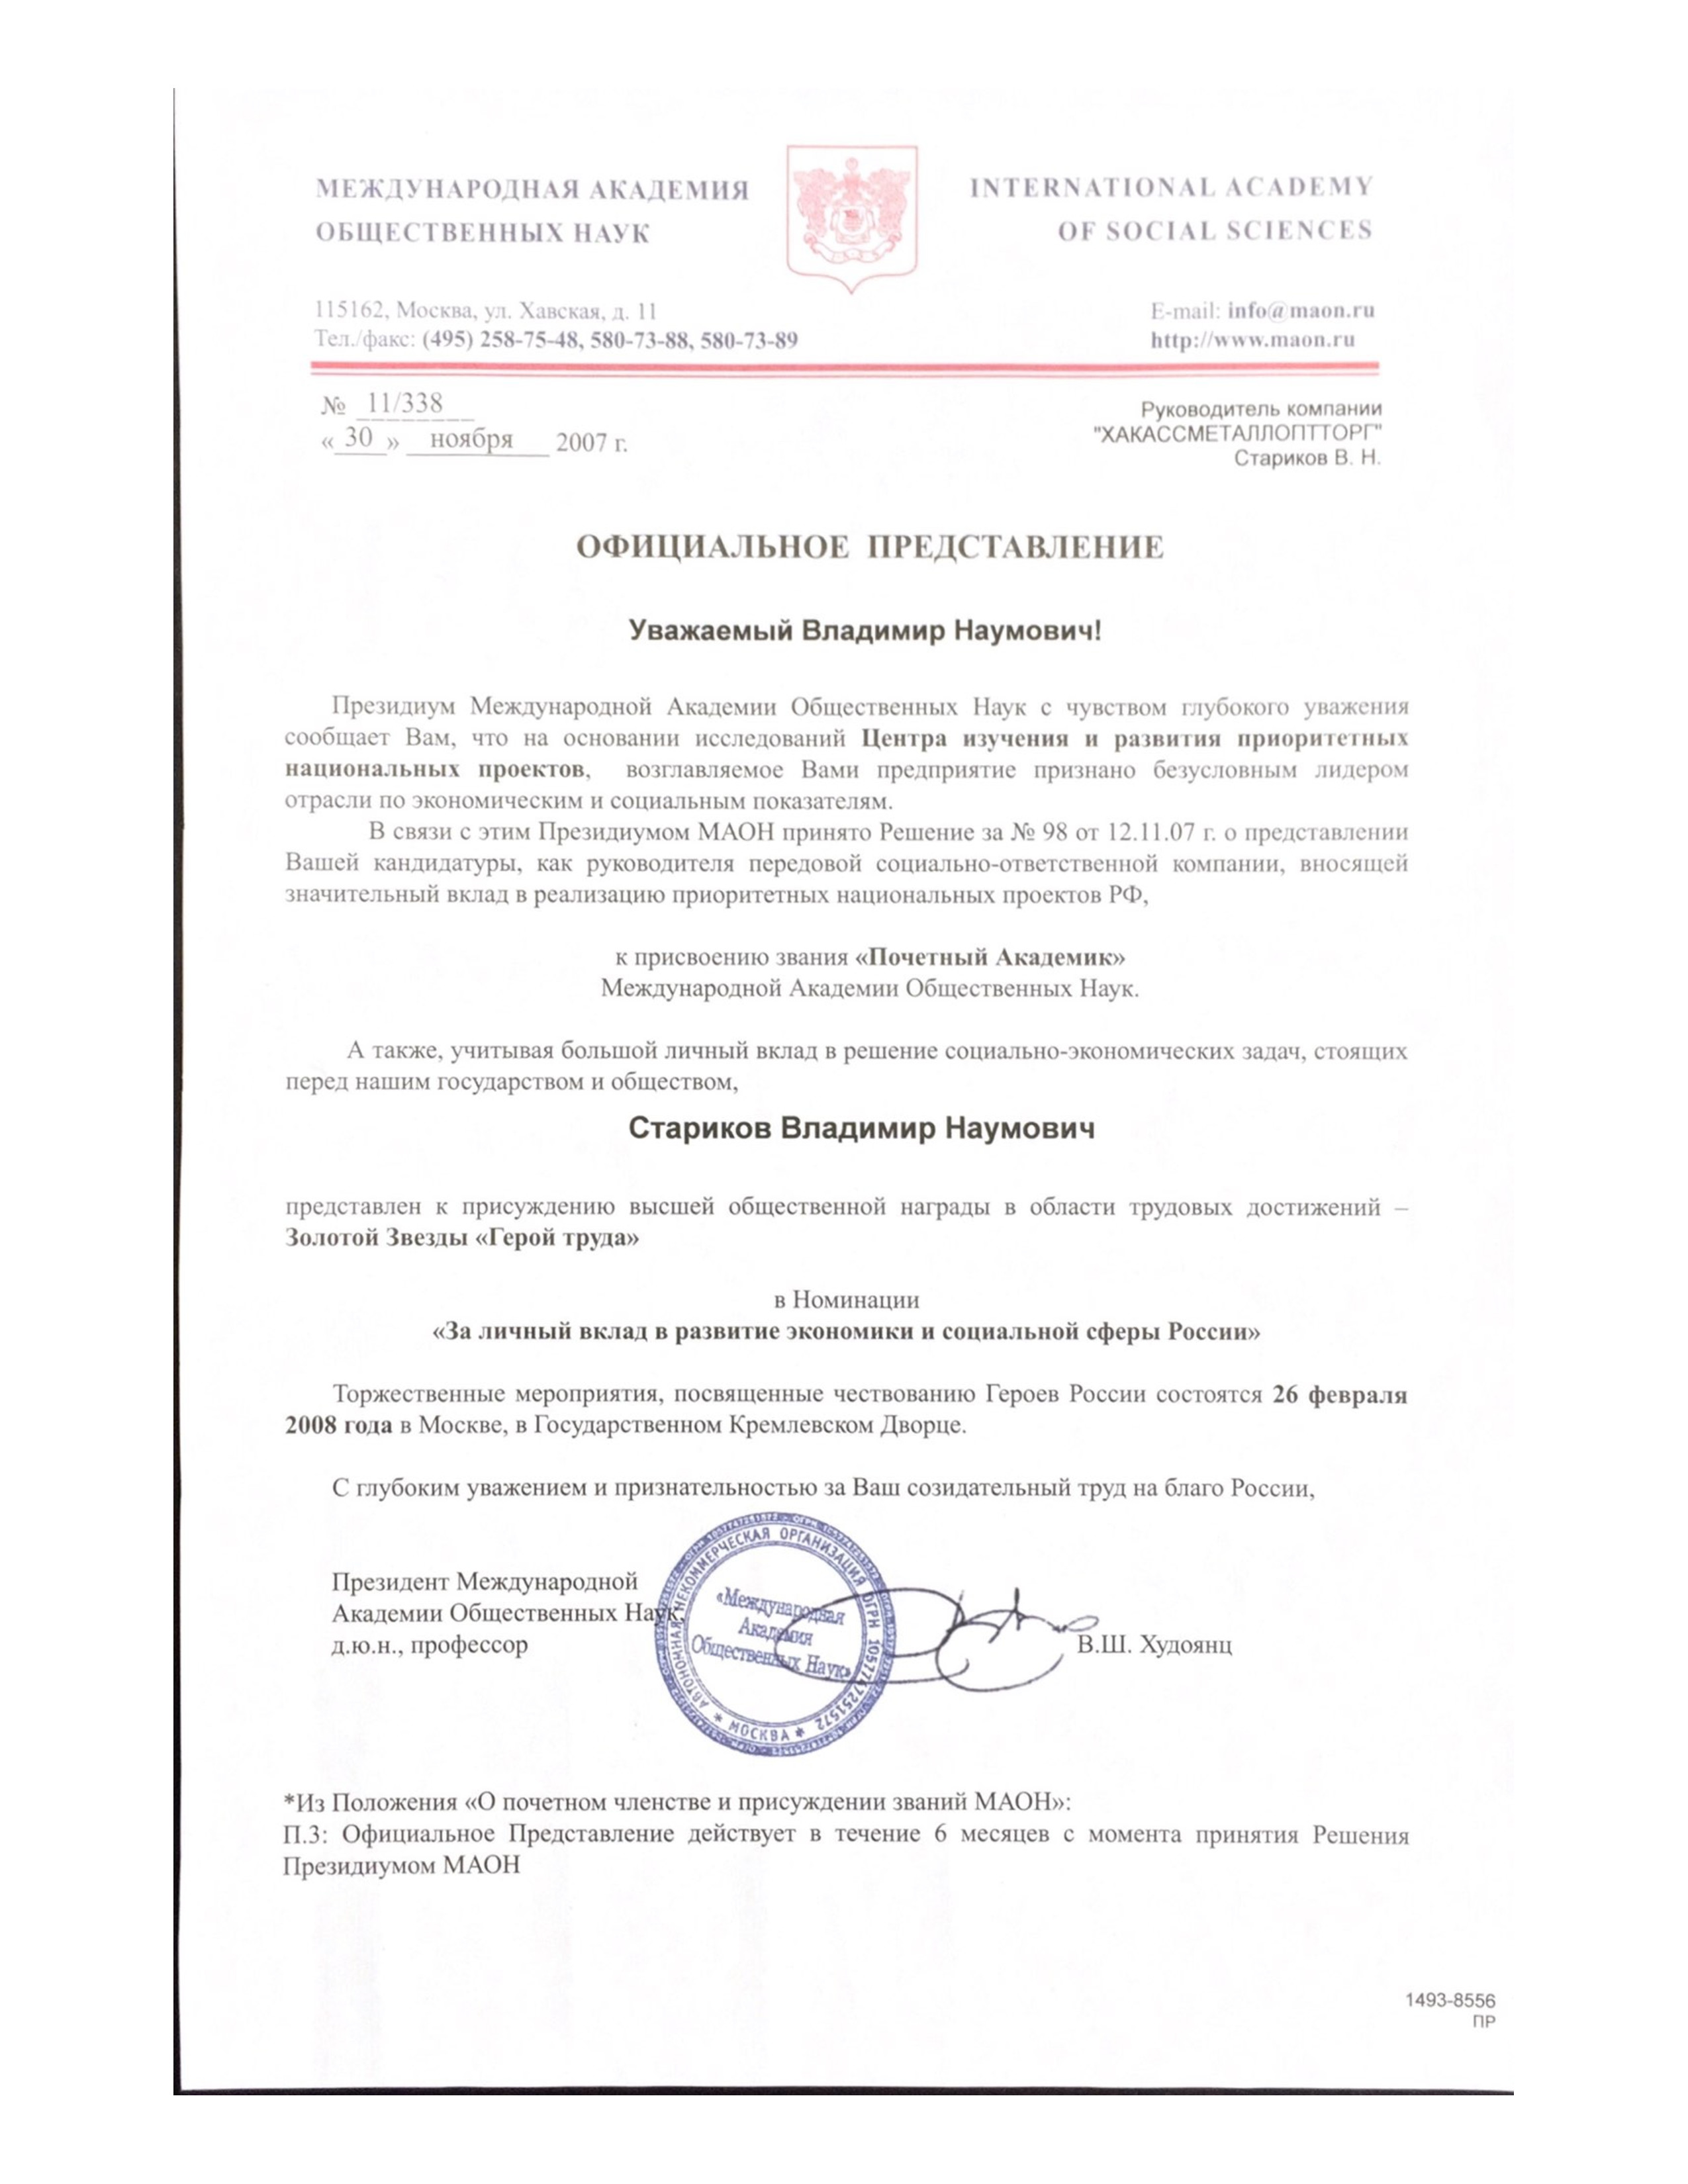 благодарственные дипломы и письма ФСК «